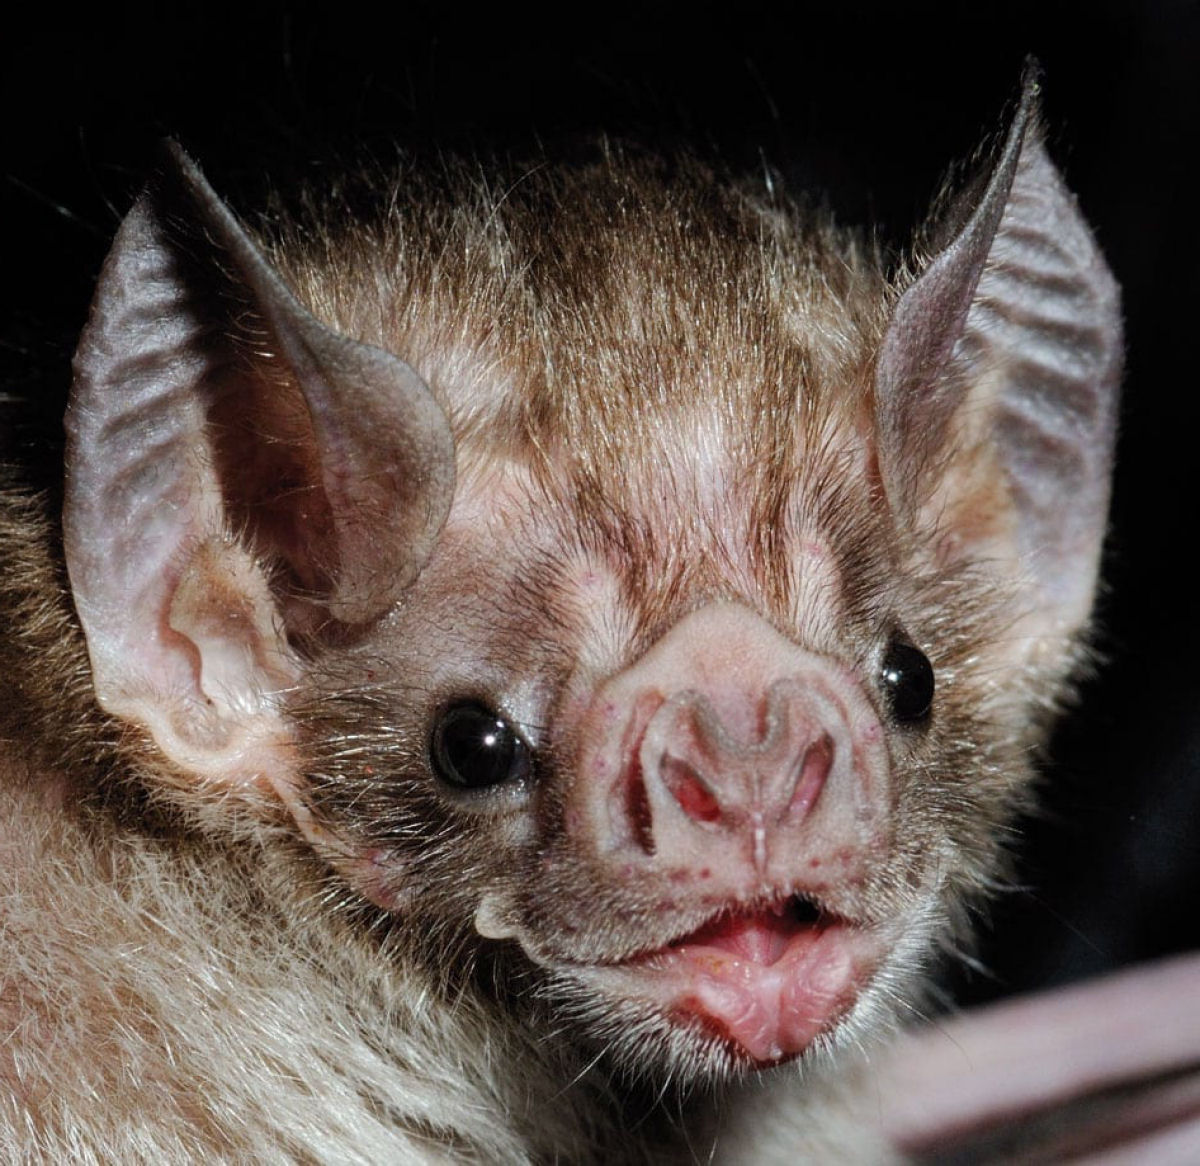 Morcego-abelha, o menor mamfero do mundo, pesa 2 gramas e cabe na ponta do dedo